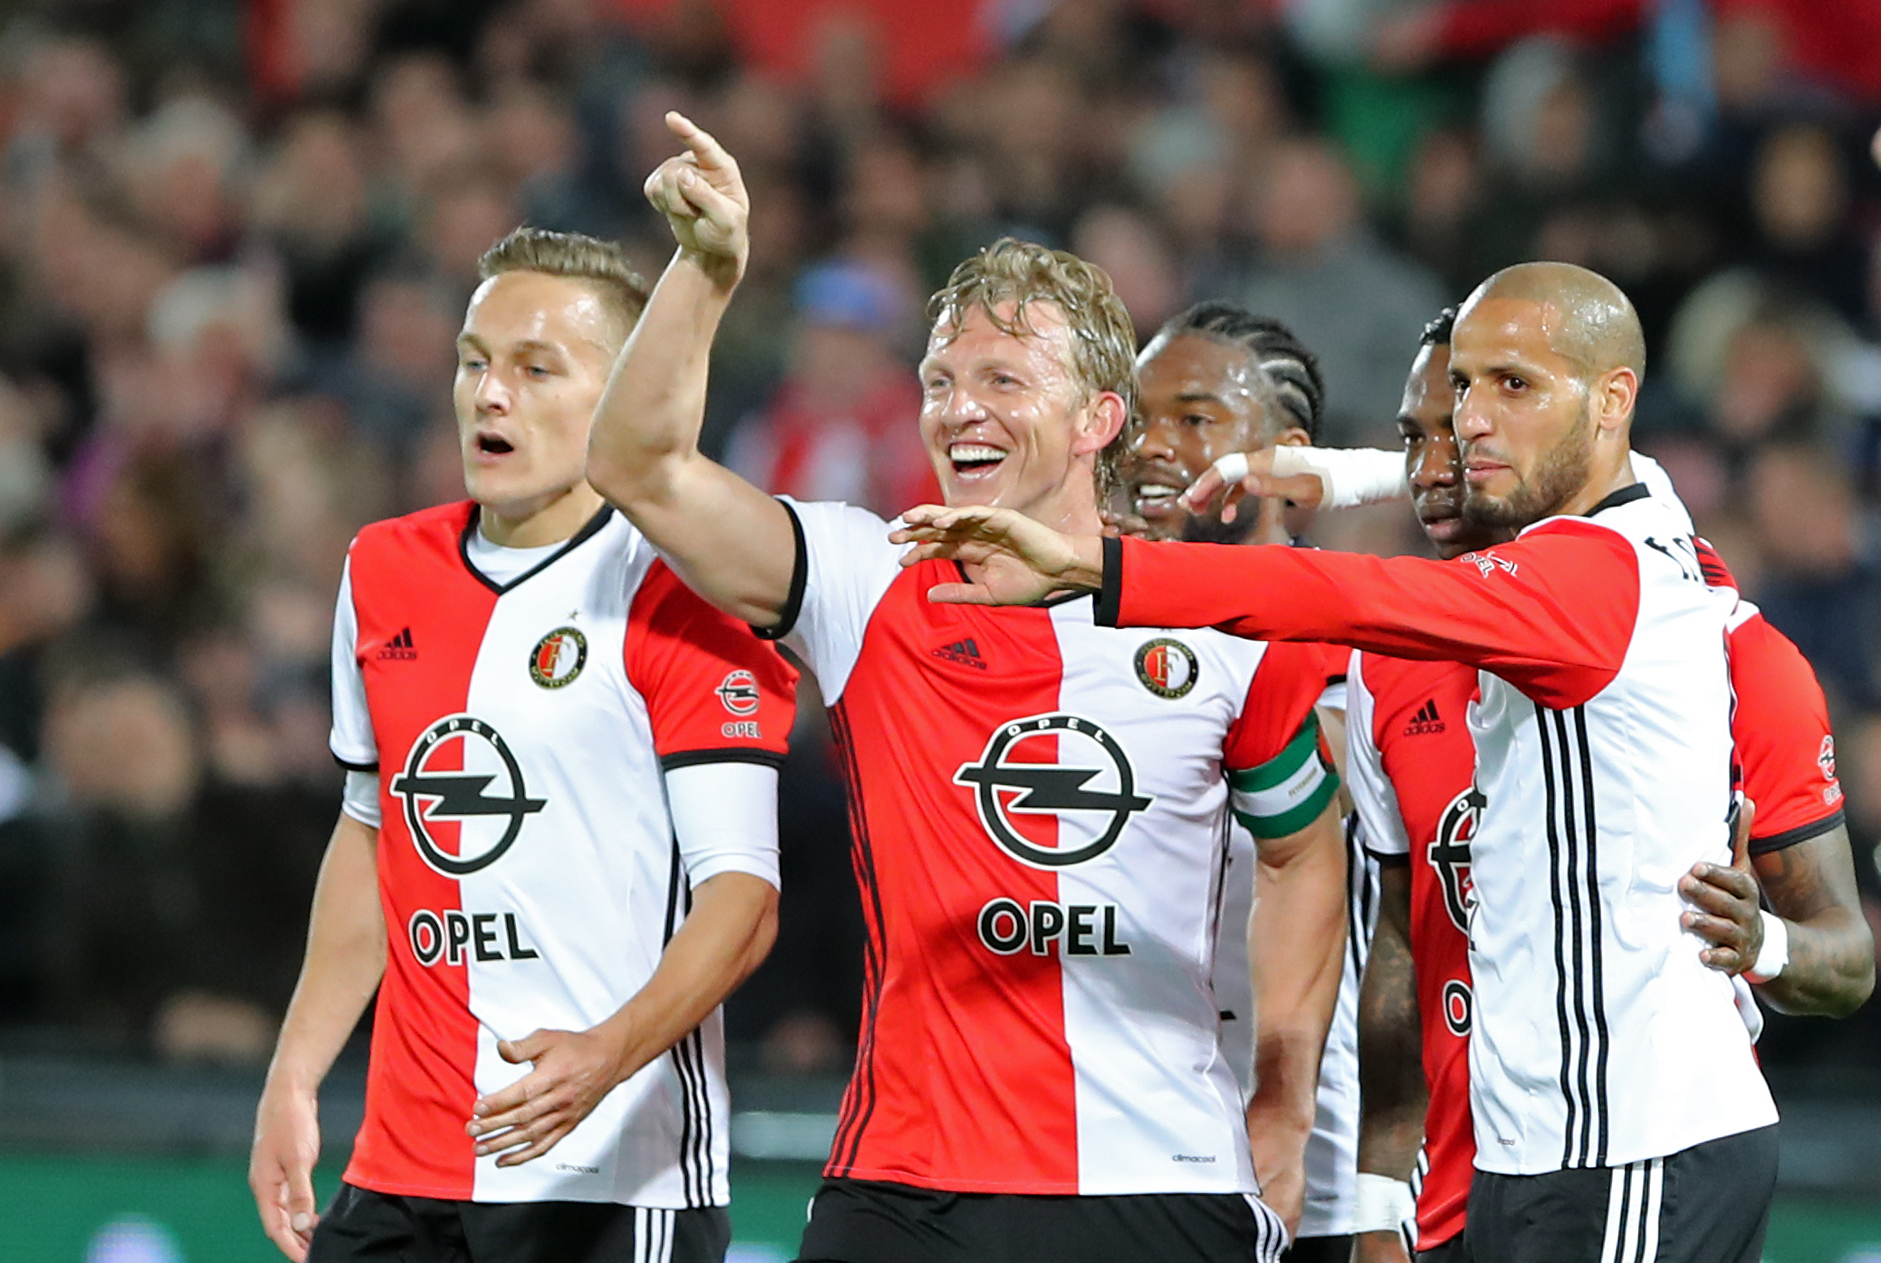 Feyenoord-Go%20ahead%20eagles-14